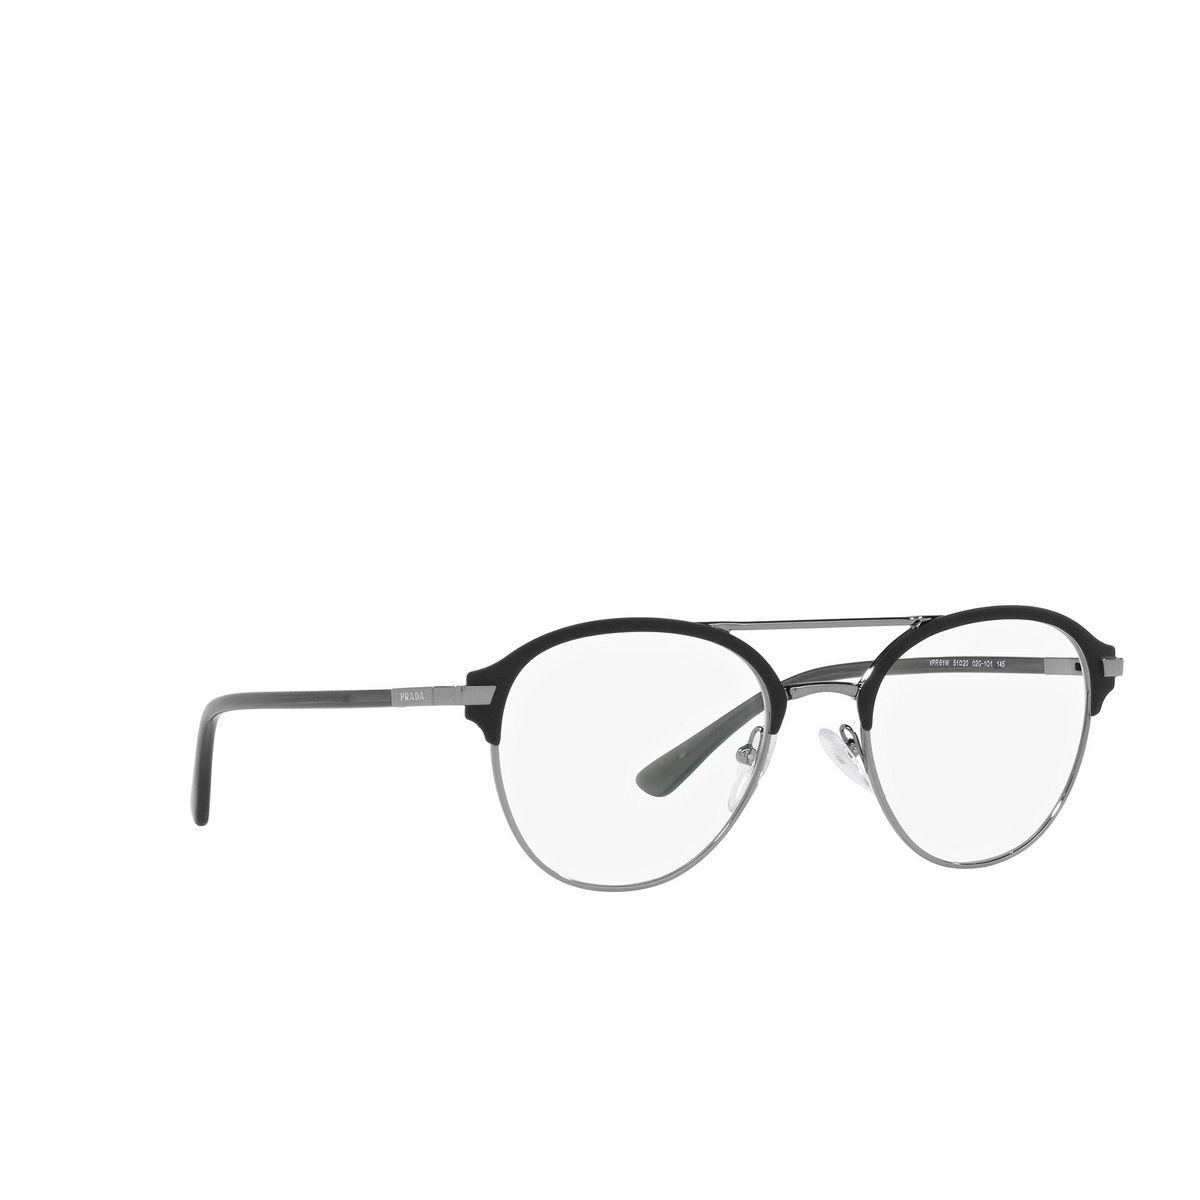 Prada® Aviator Eyeglasses: PR 61WV color Matte Black / Gunmetal 02G1O1 - three-quarters view.